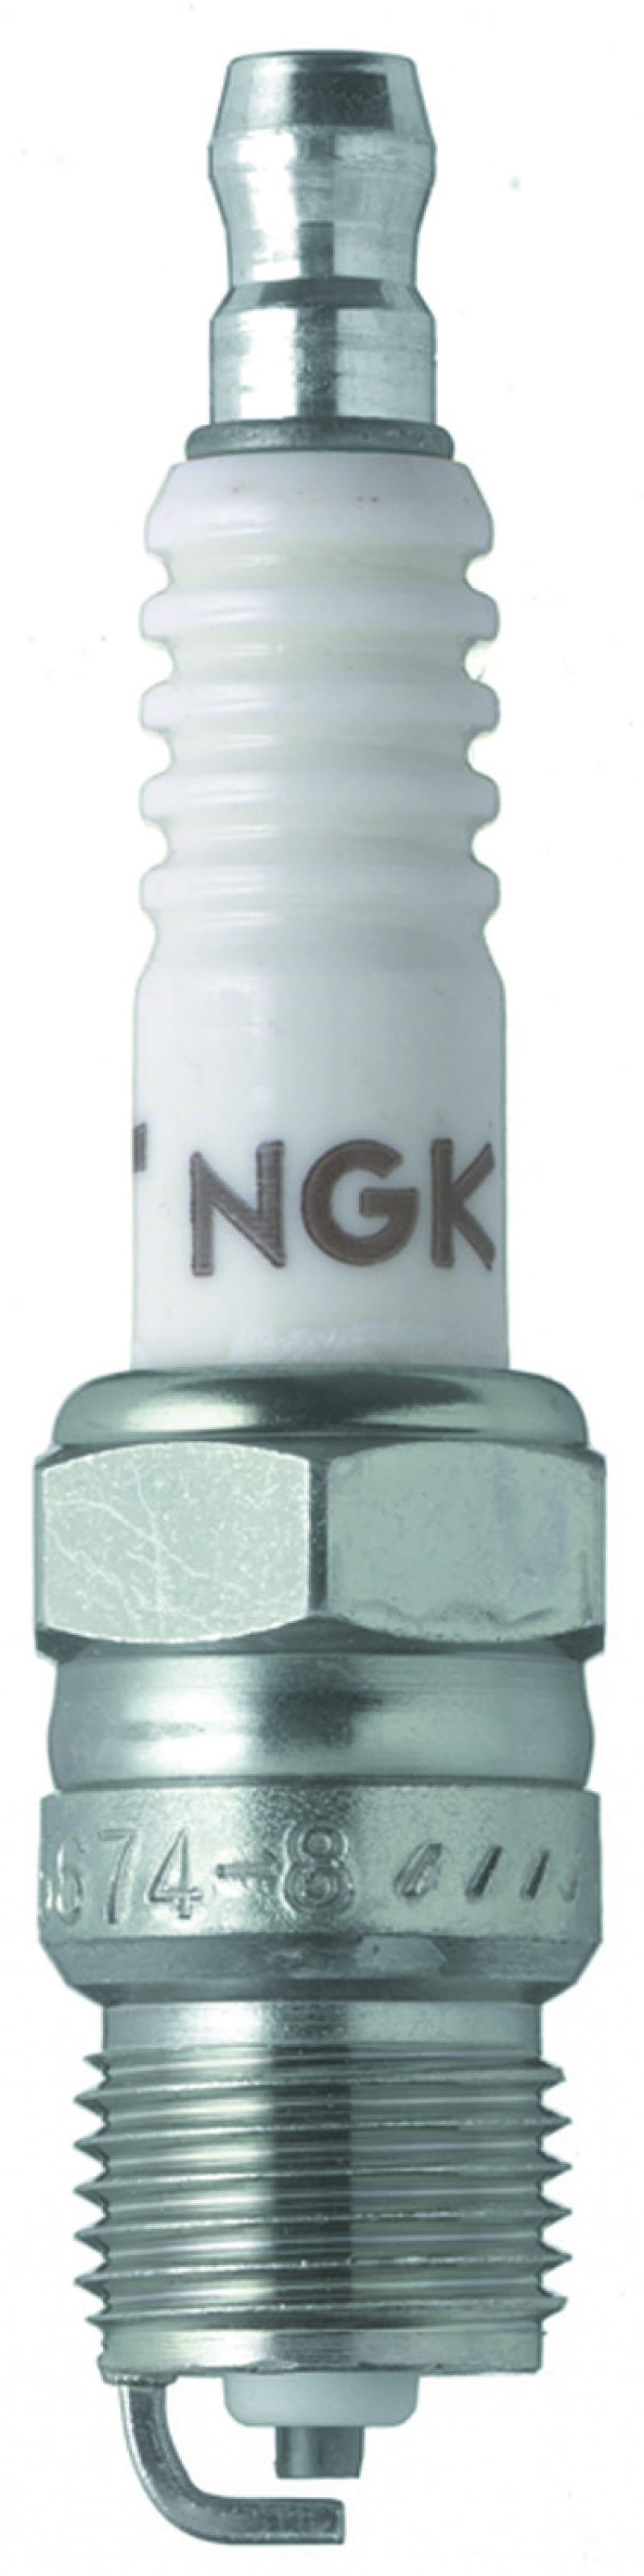 NGK Nickel Spark Plug Box of 4 (R5674-10) - 6702